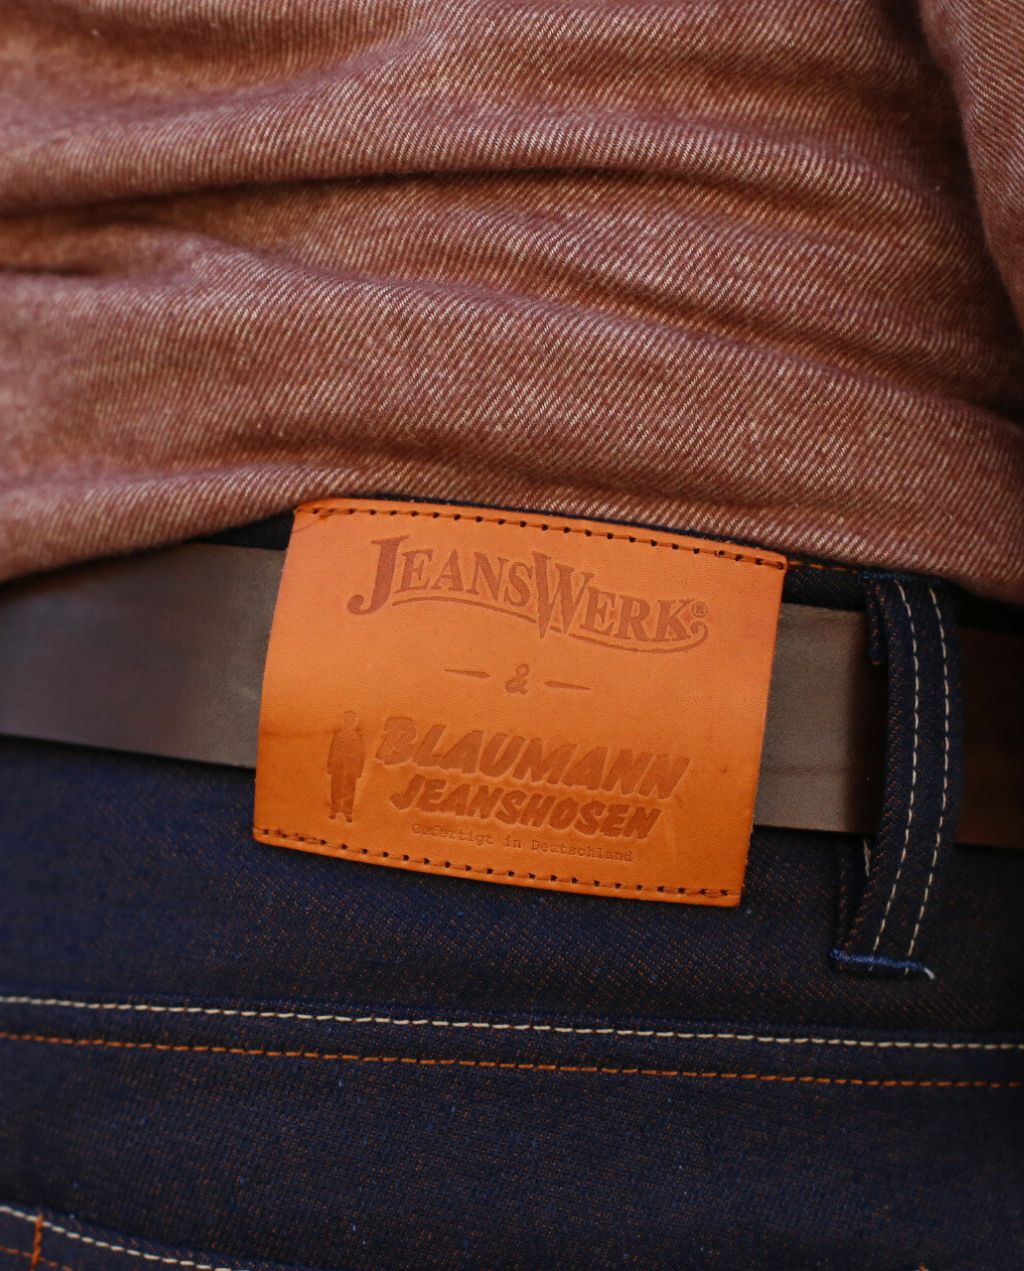 Jeanswerk 10Y. red/browncast